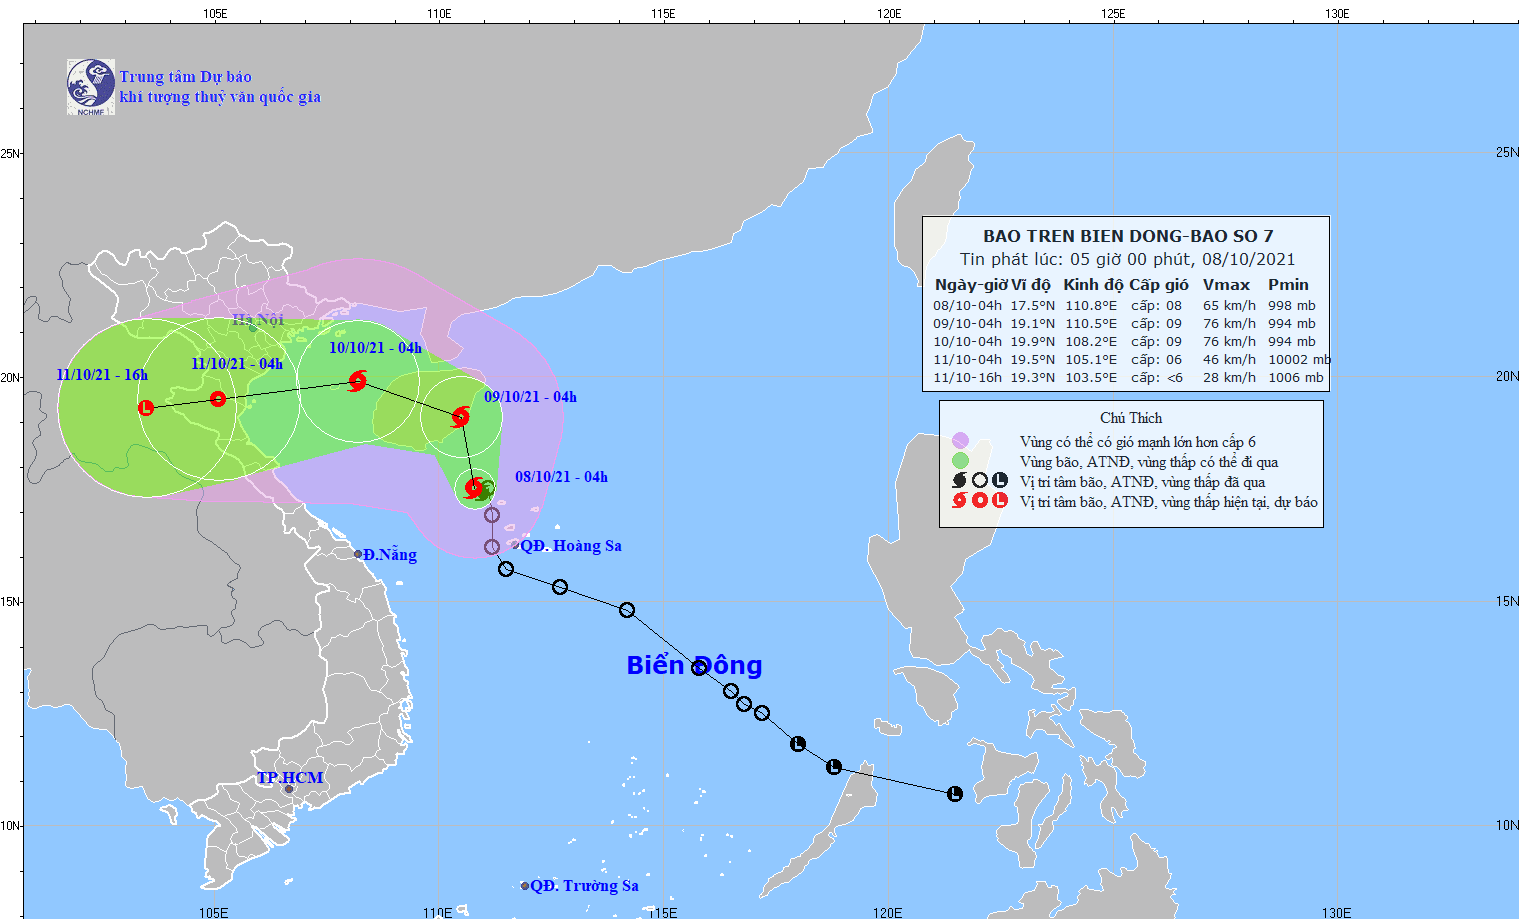 Biển Đông đón bão số 7, mưa to gió lớn trên diện rộng